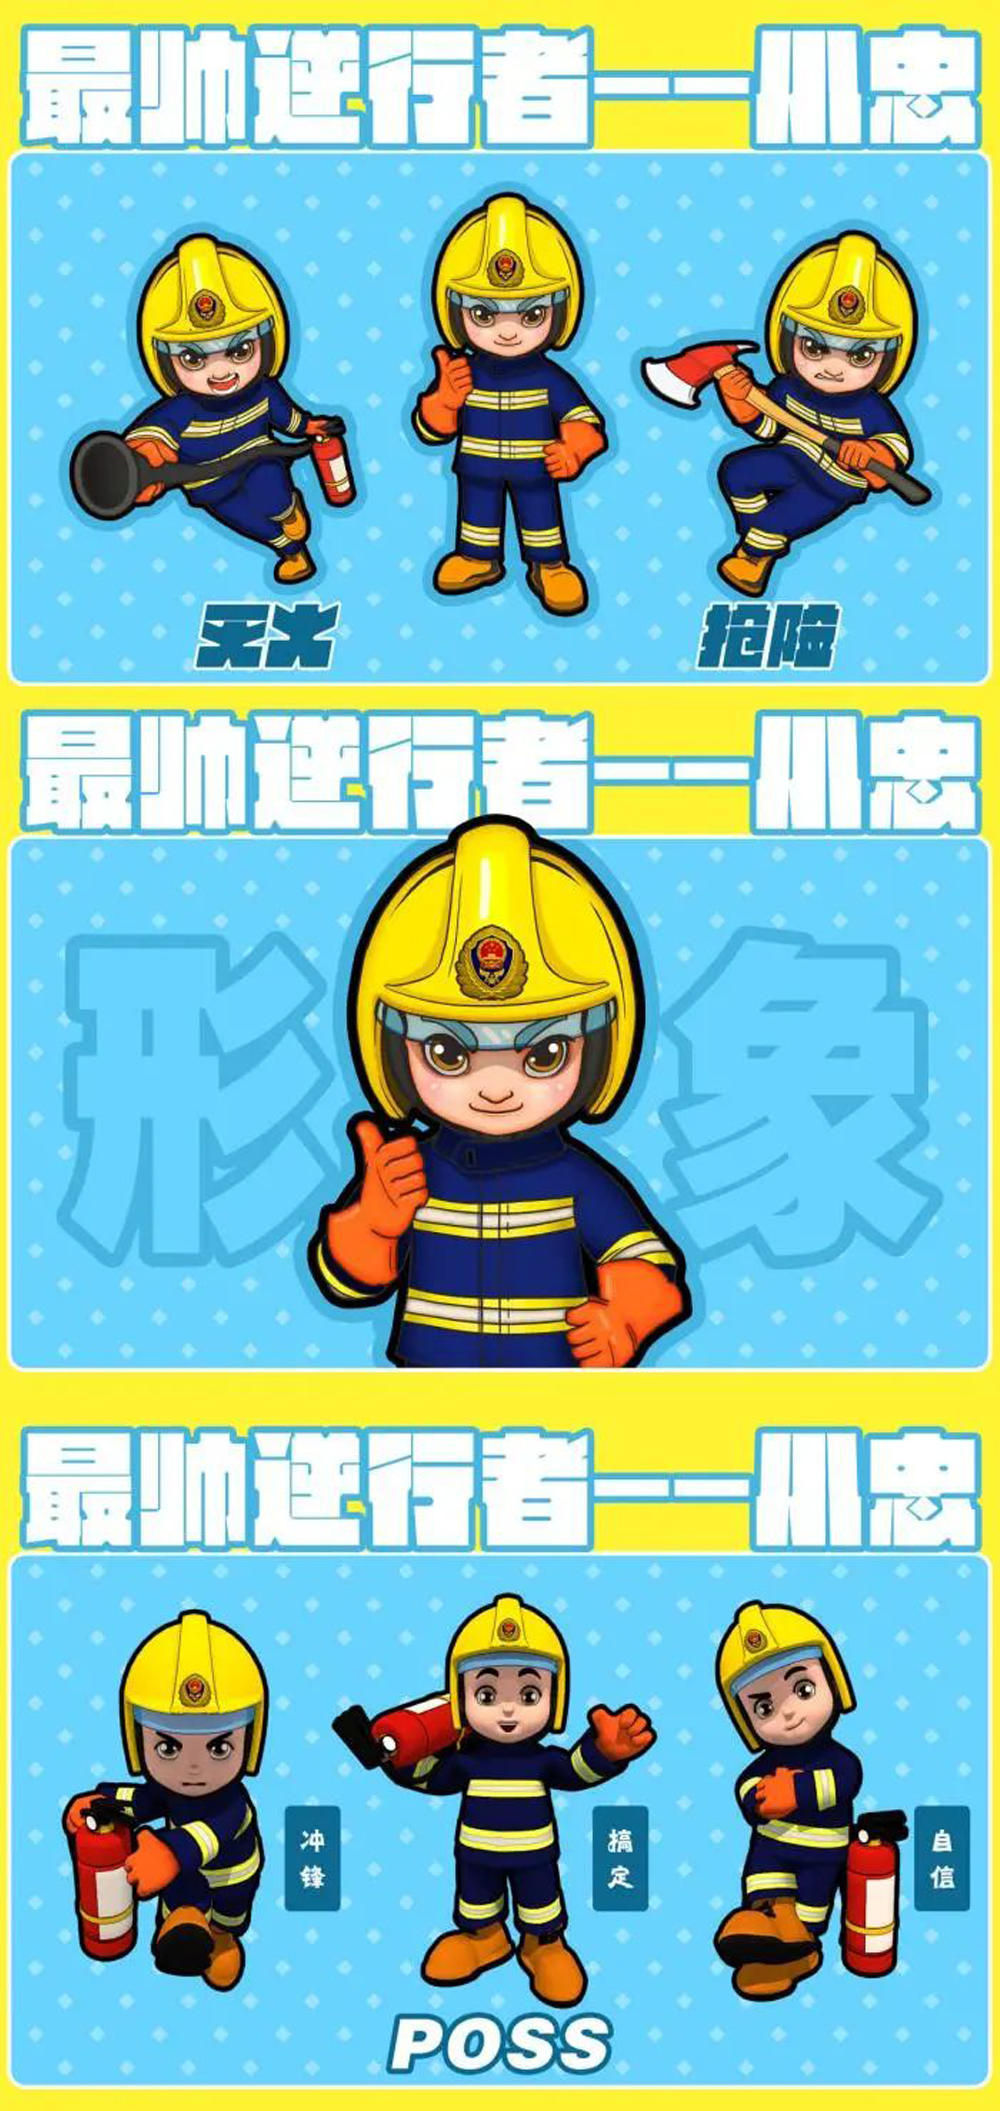 中国消防动漫形象创意设计大赛获奖名单及获奖作品(图8)